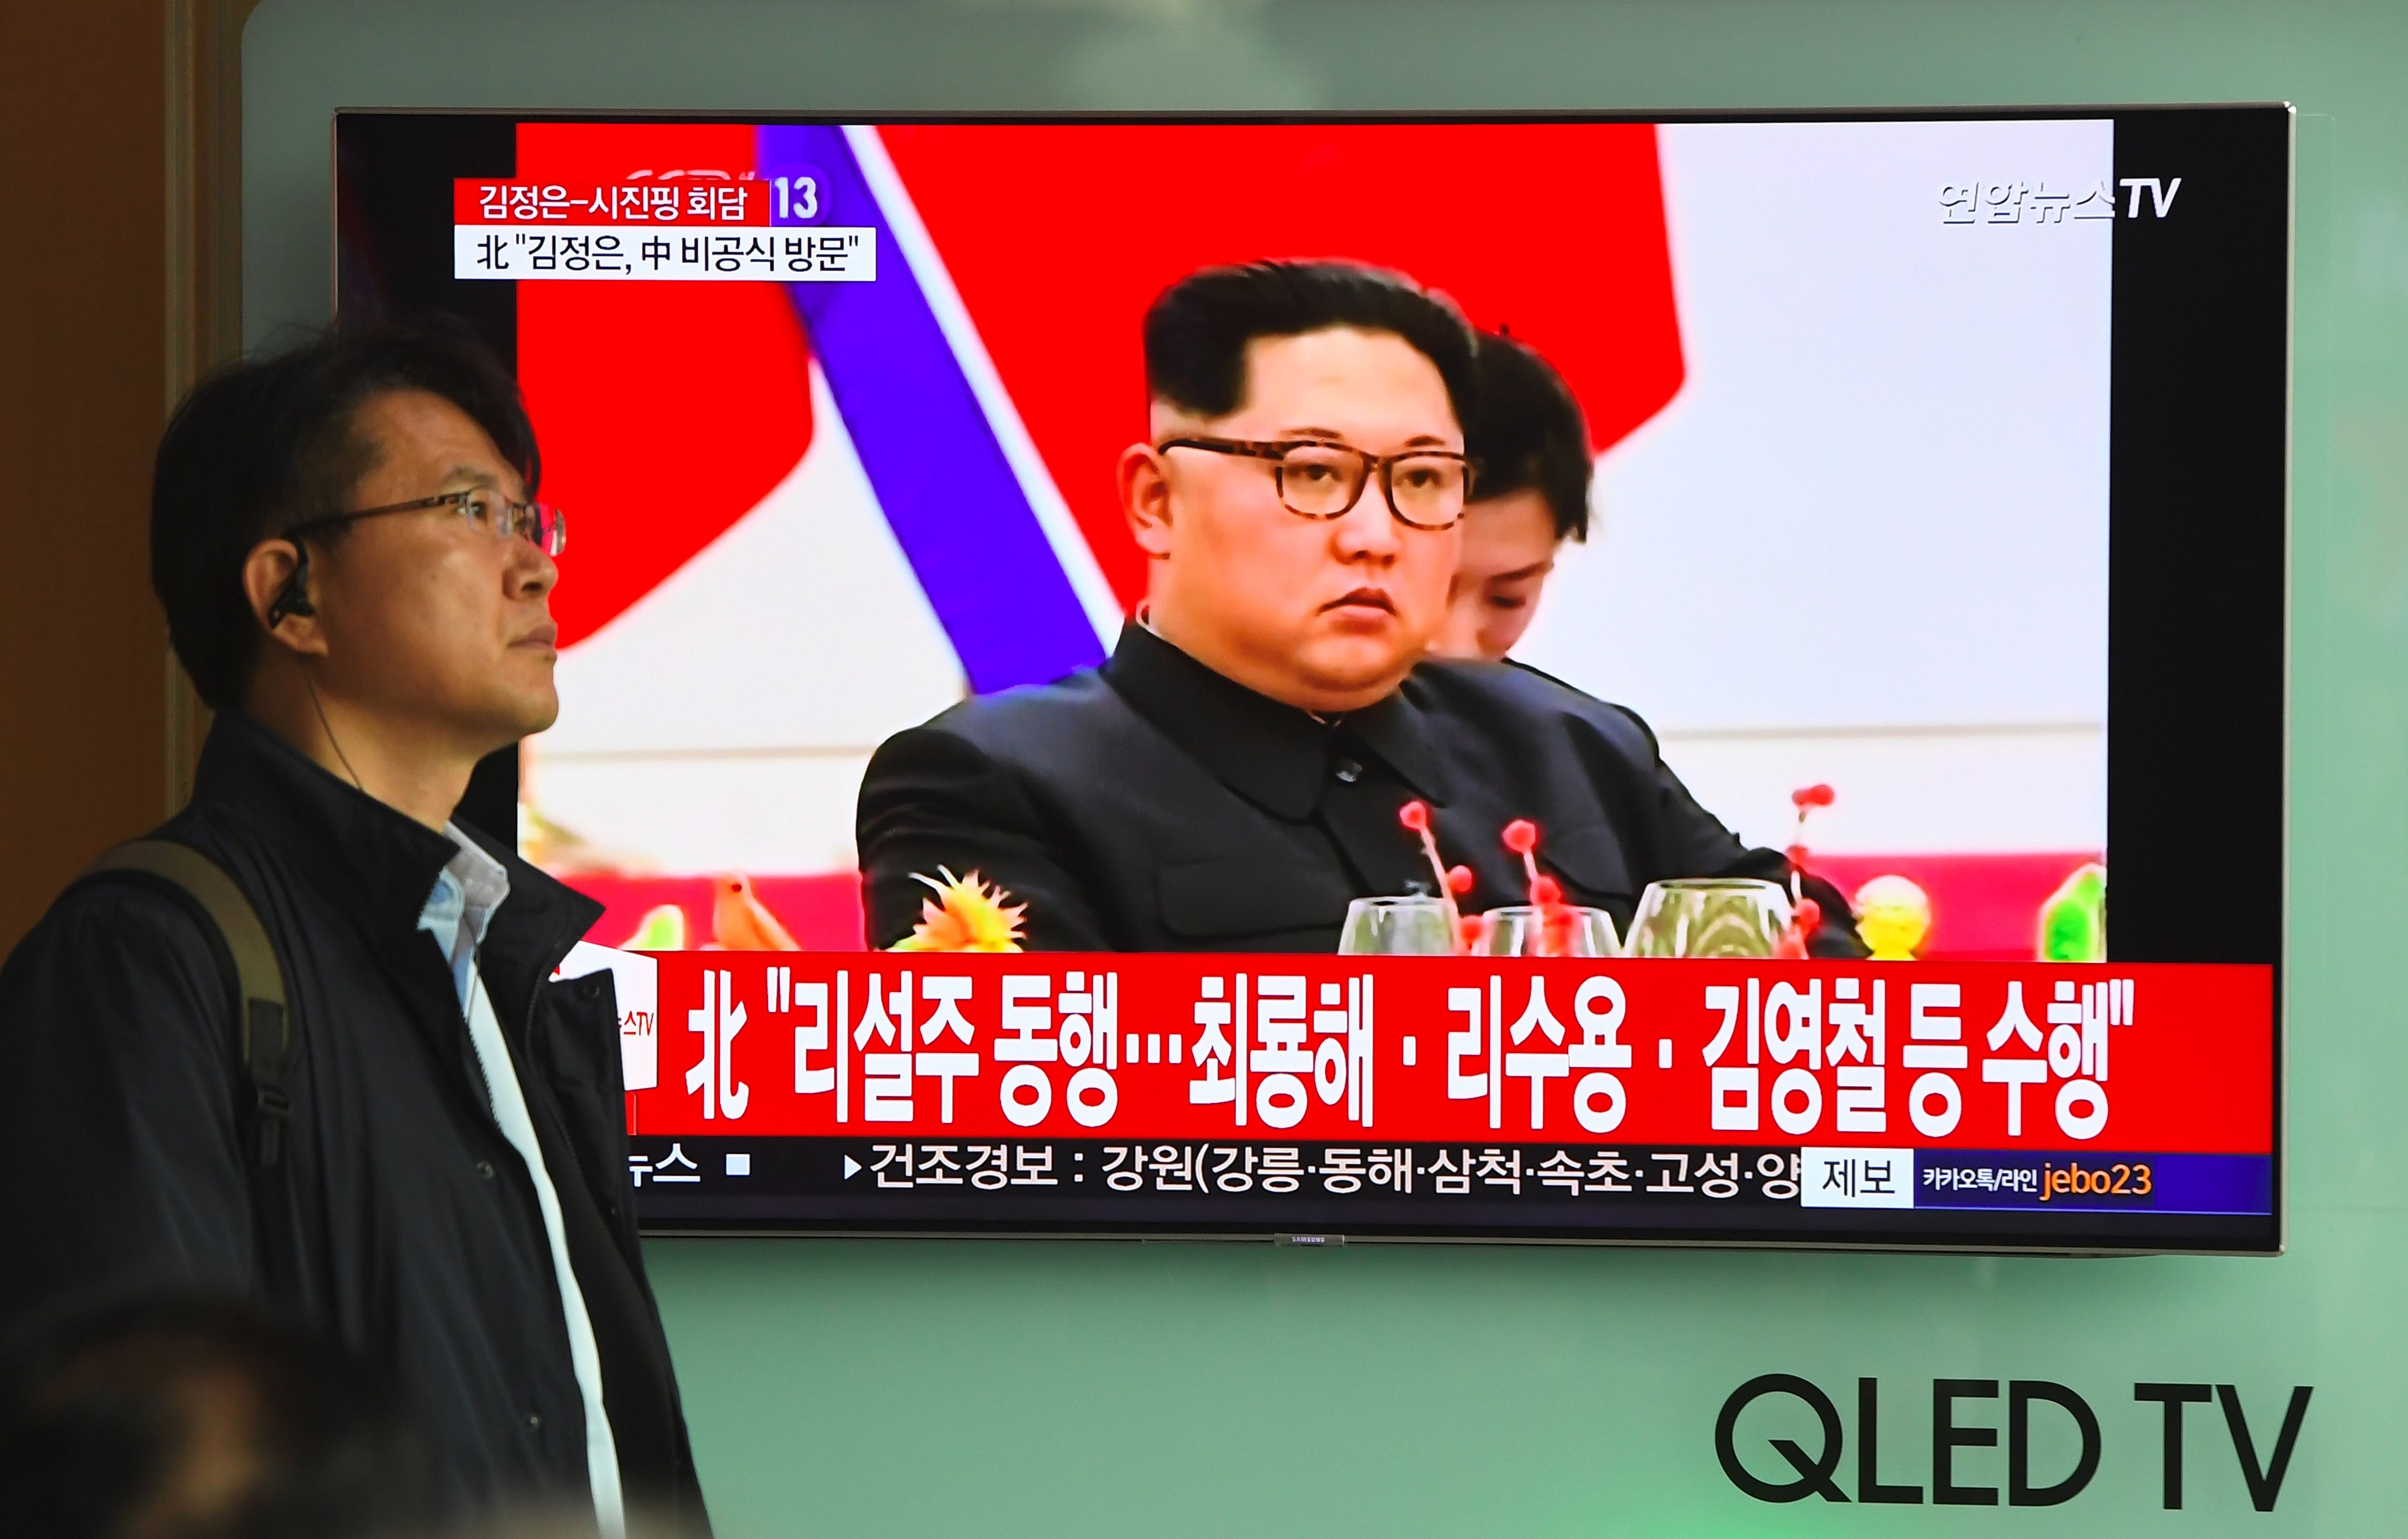 Kim Jong-un on tv.